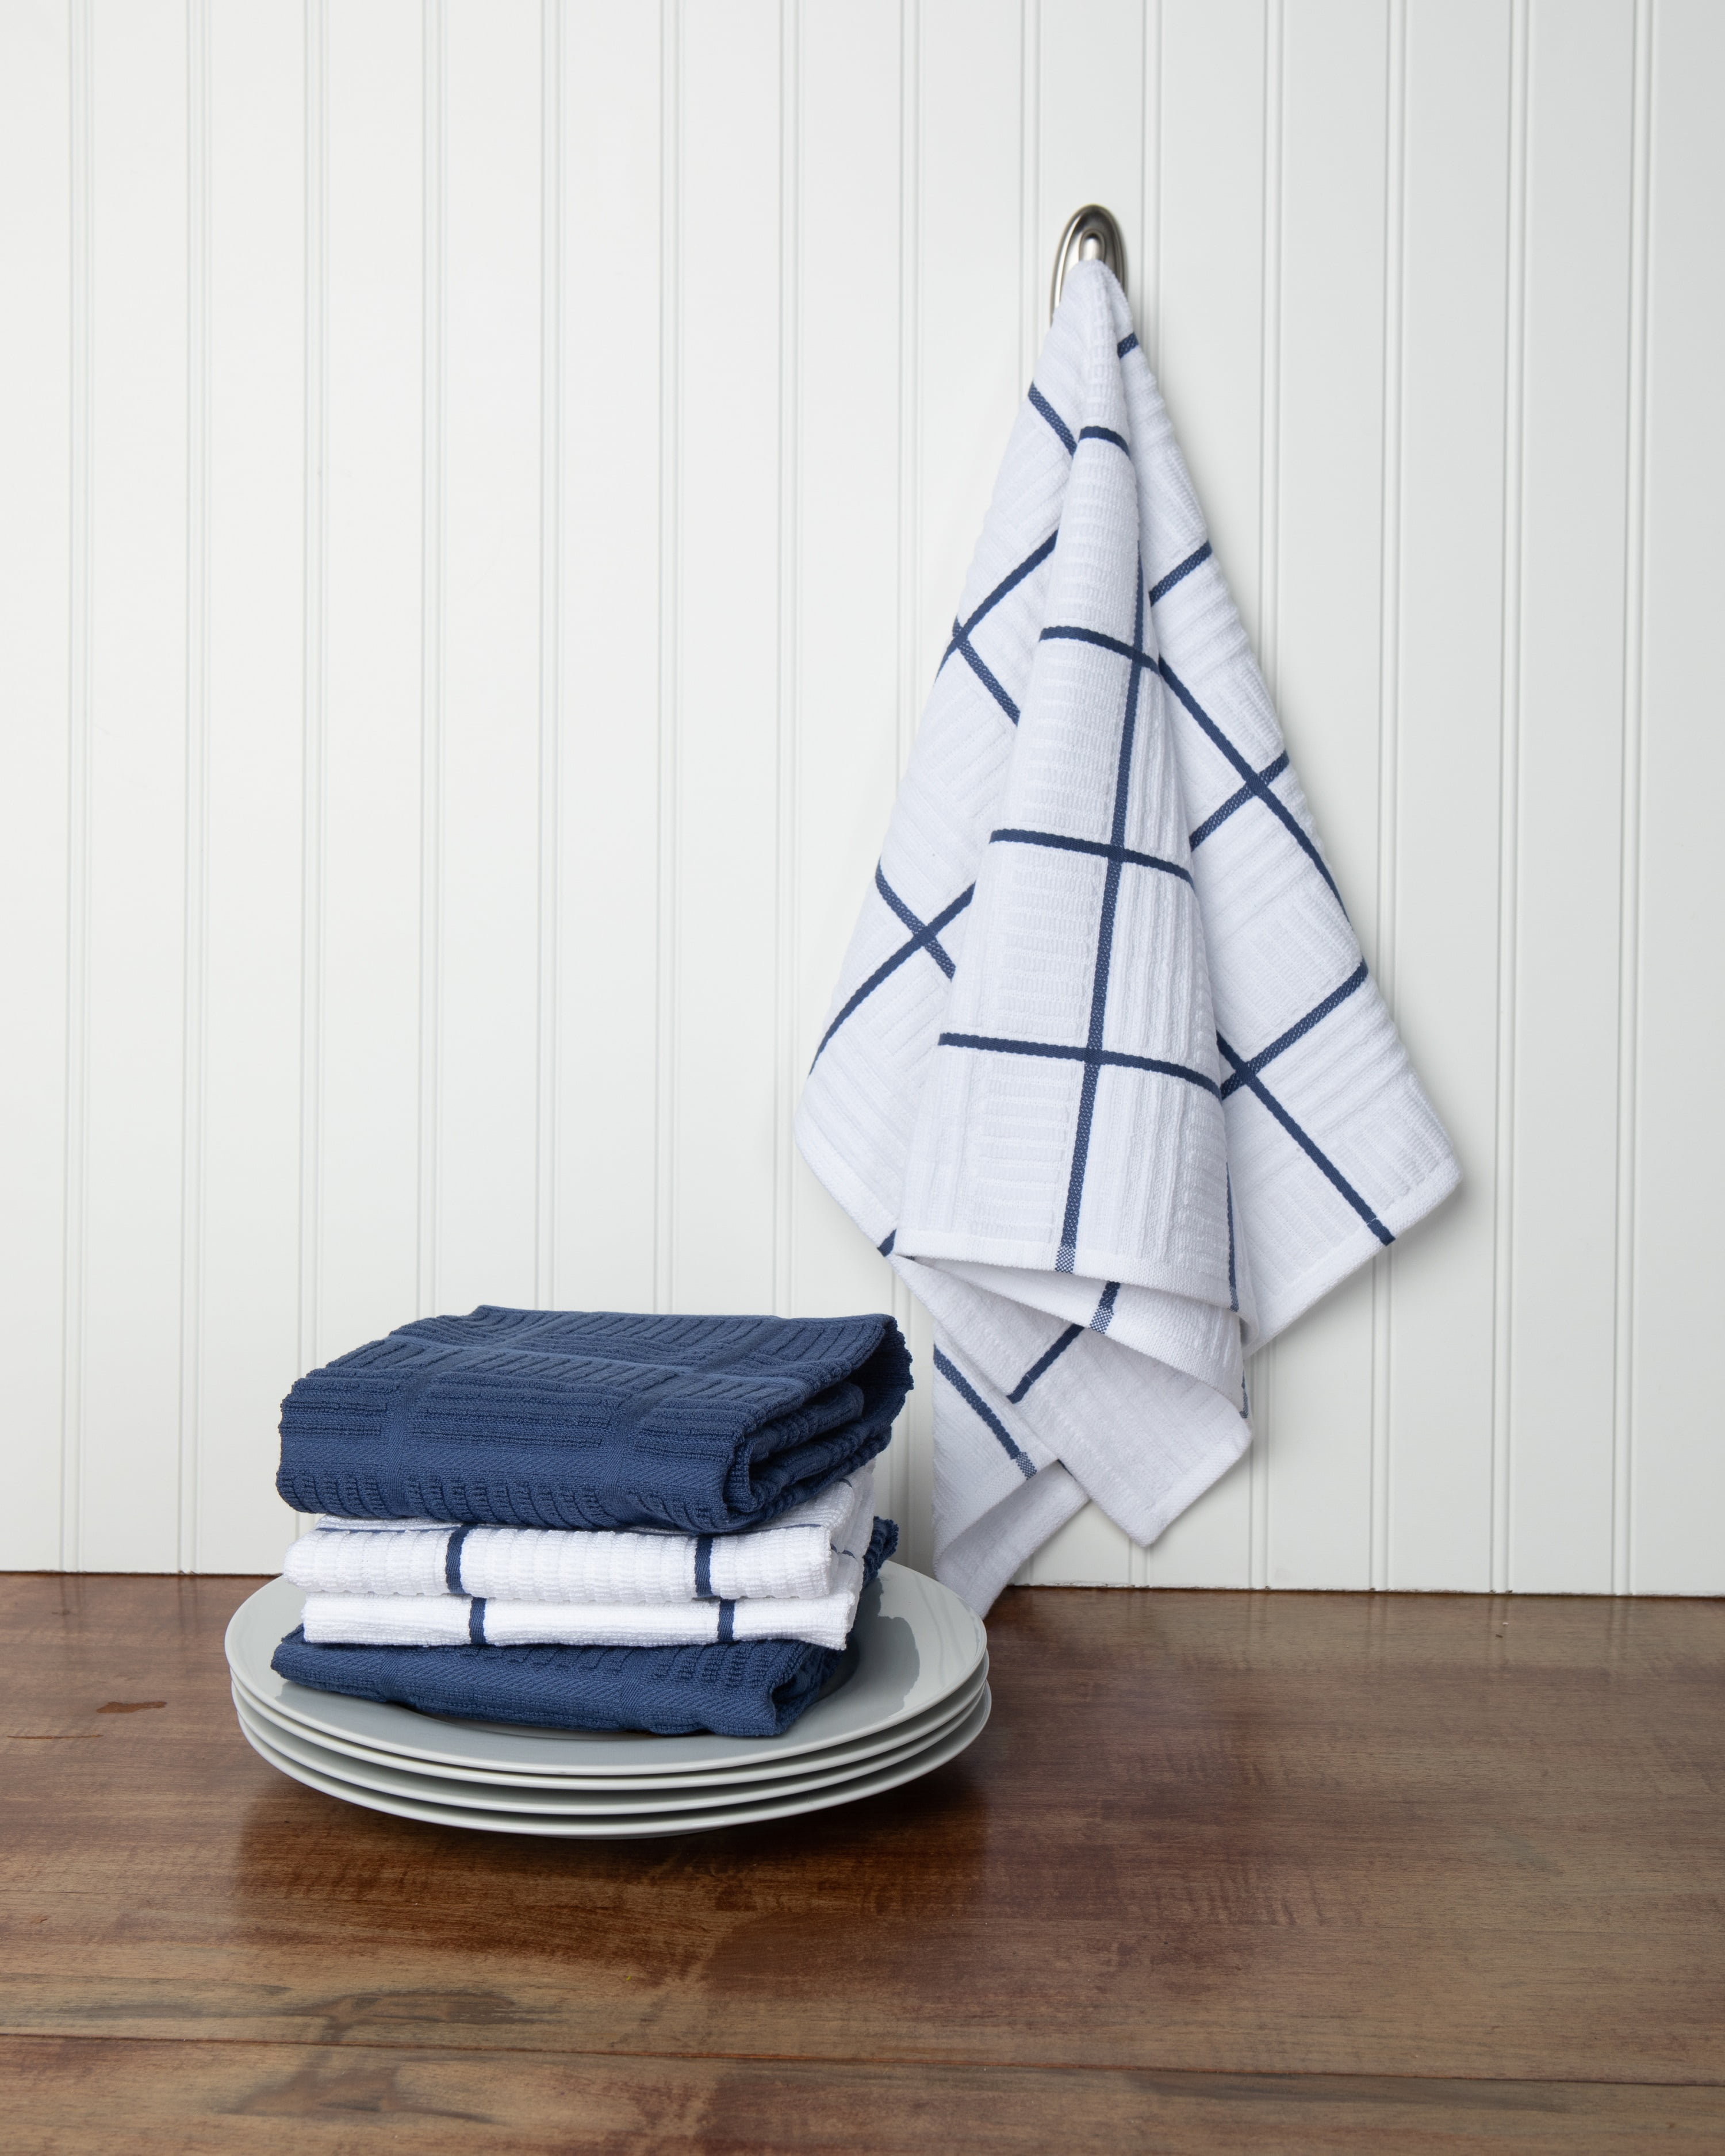 WHITEWRAP Kitchen Towels | 100% Cotton | Dish Towels for Kitchen | 15x25  Pique Weave Light Blue 6-Pack | Hand Towels, Tea Towels, Dish Cloths| Super